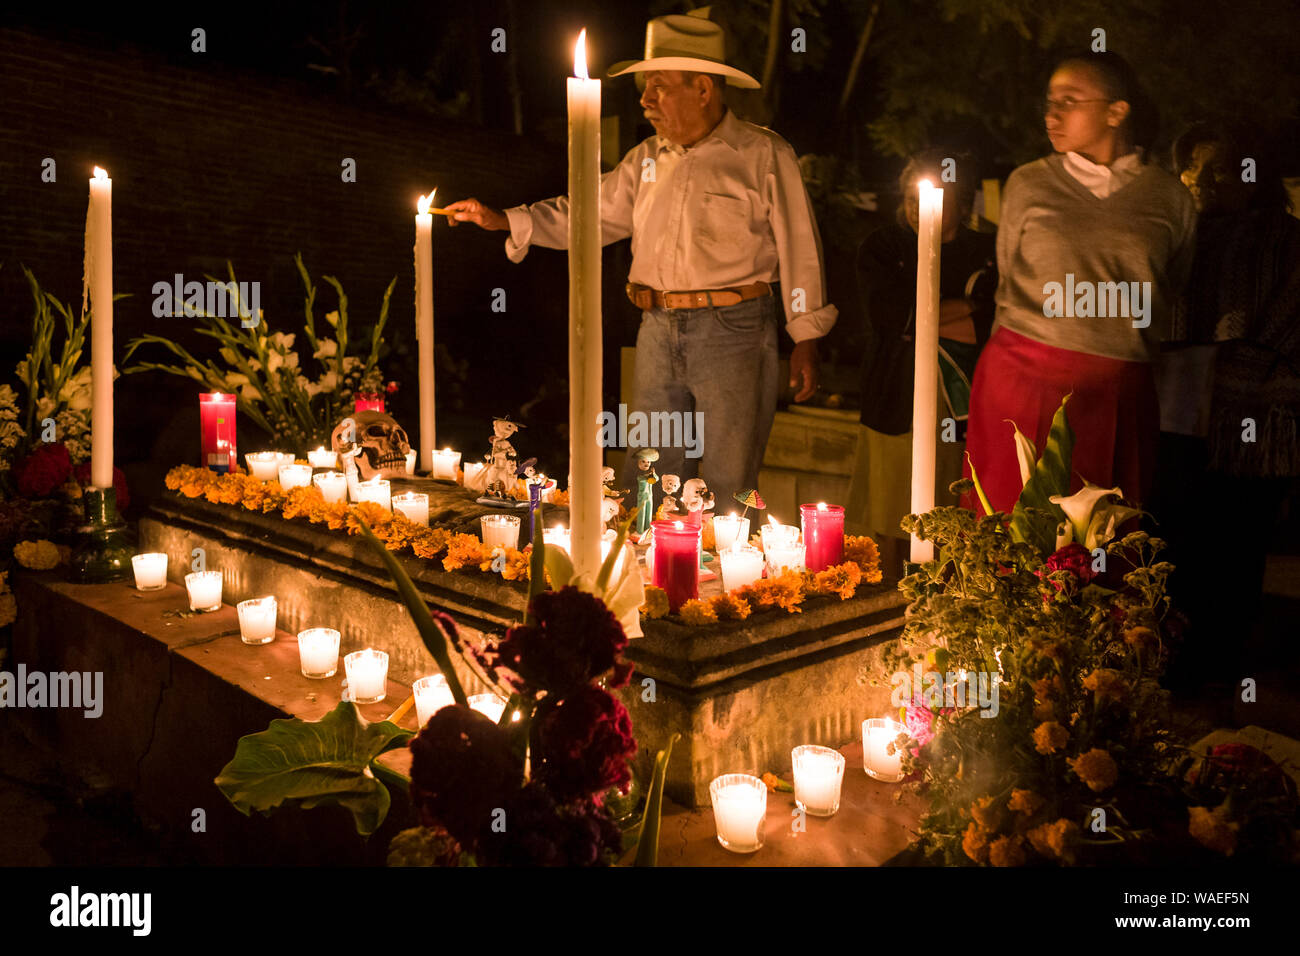 Bougies d'éclairage de l'homme au cimetière en grave décoré pour le Jour des Morts, Xoxocotlan, Oaxaca, Mexique vacances locales et festivals traditions culturelles Banque D'Images